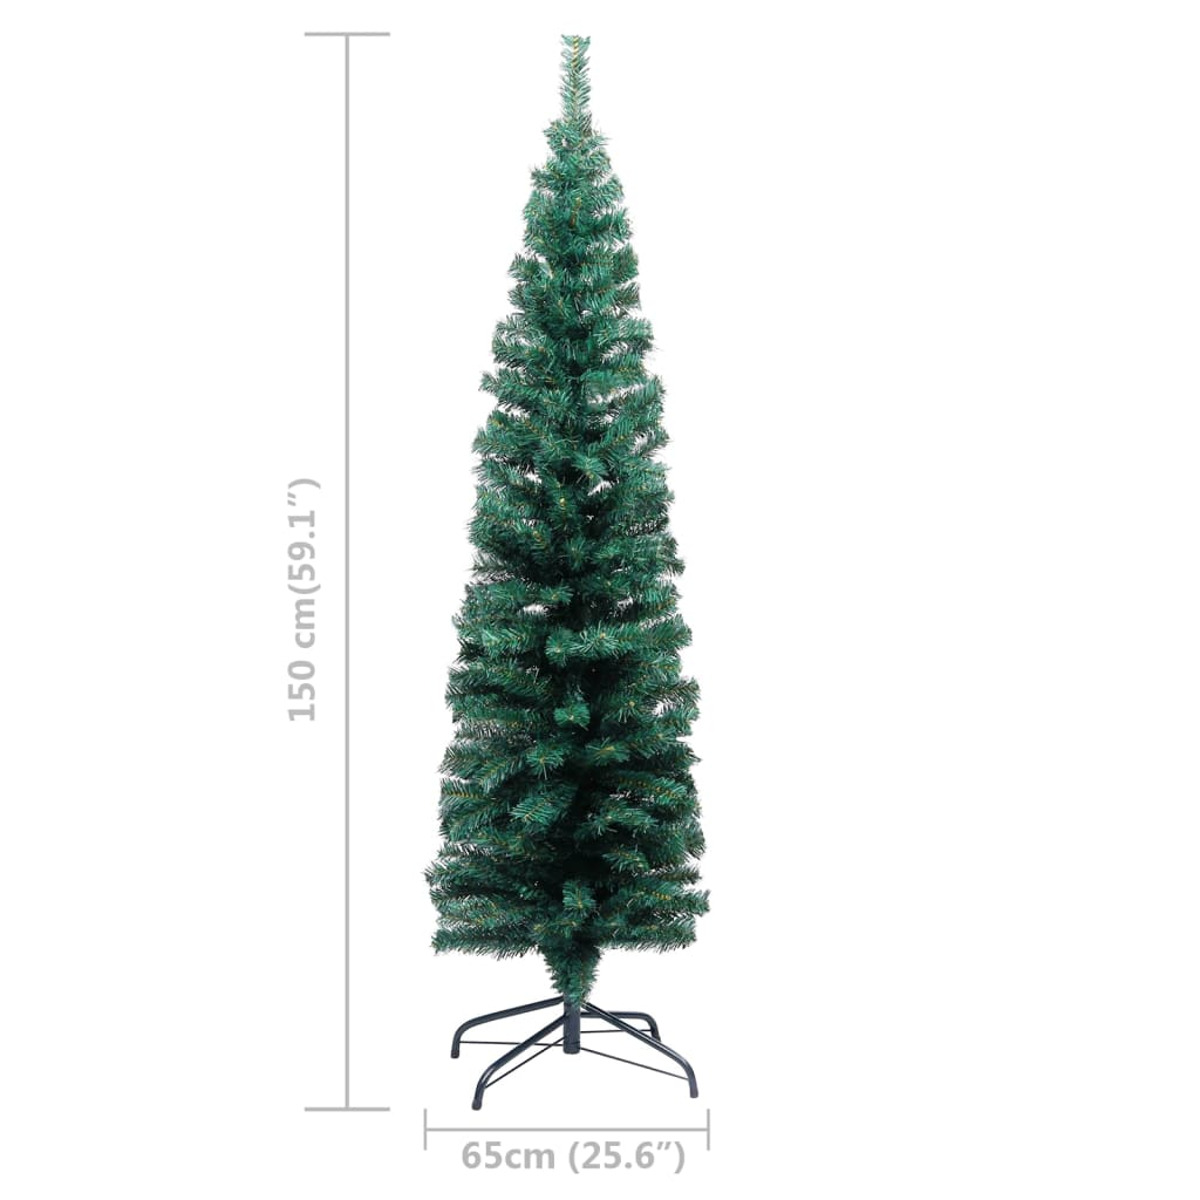 VIDAXL 3077851 Weihnachtsbaum